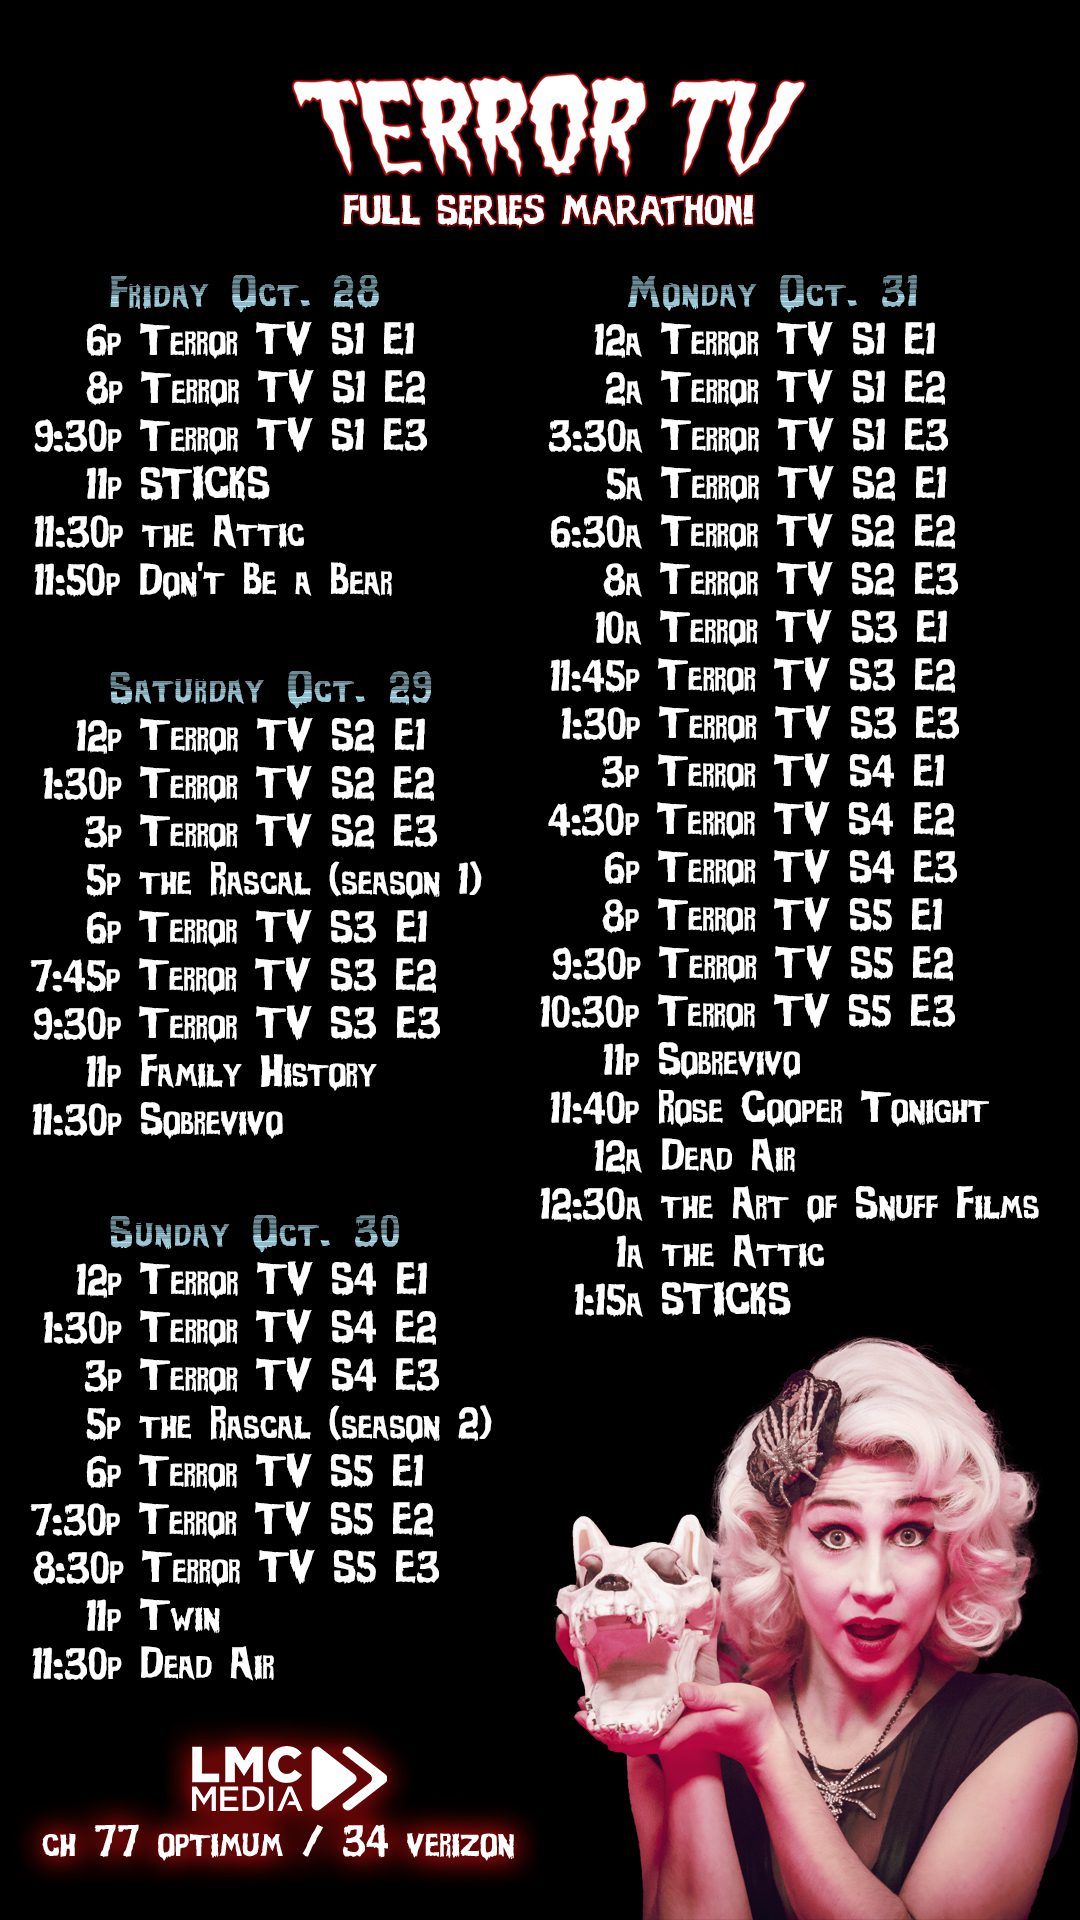 Terror TV Marathon Schedule